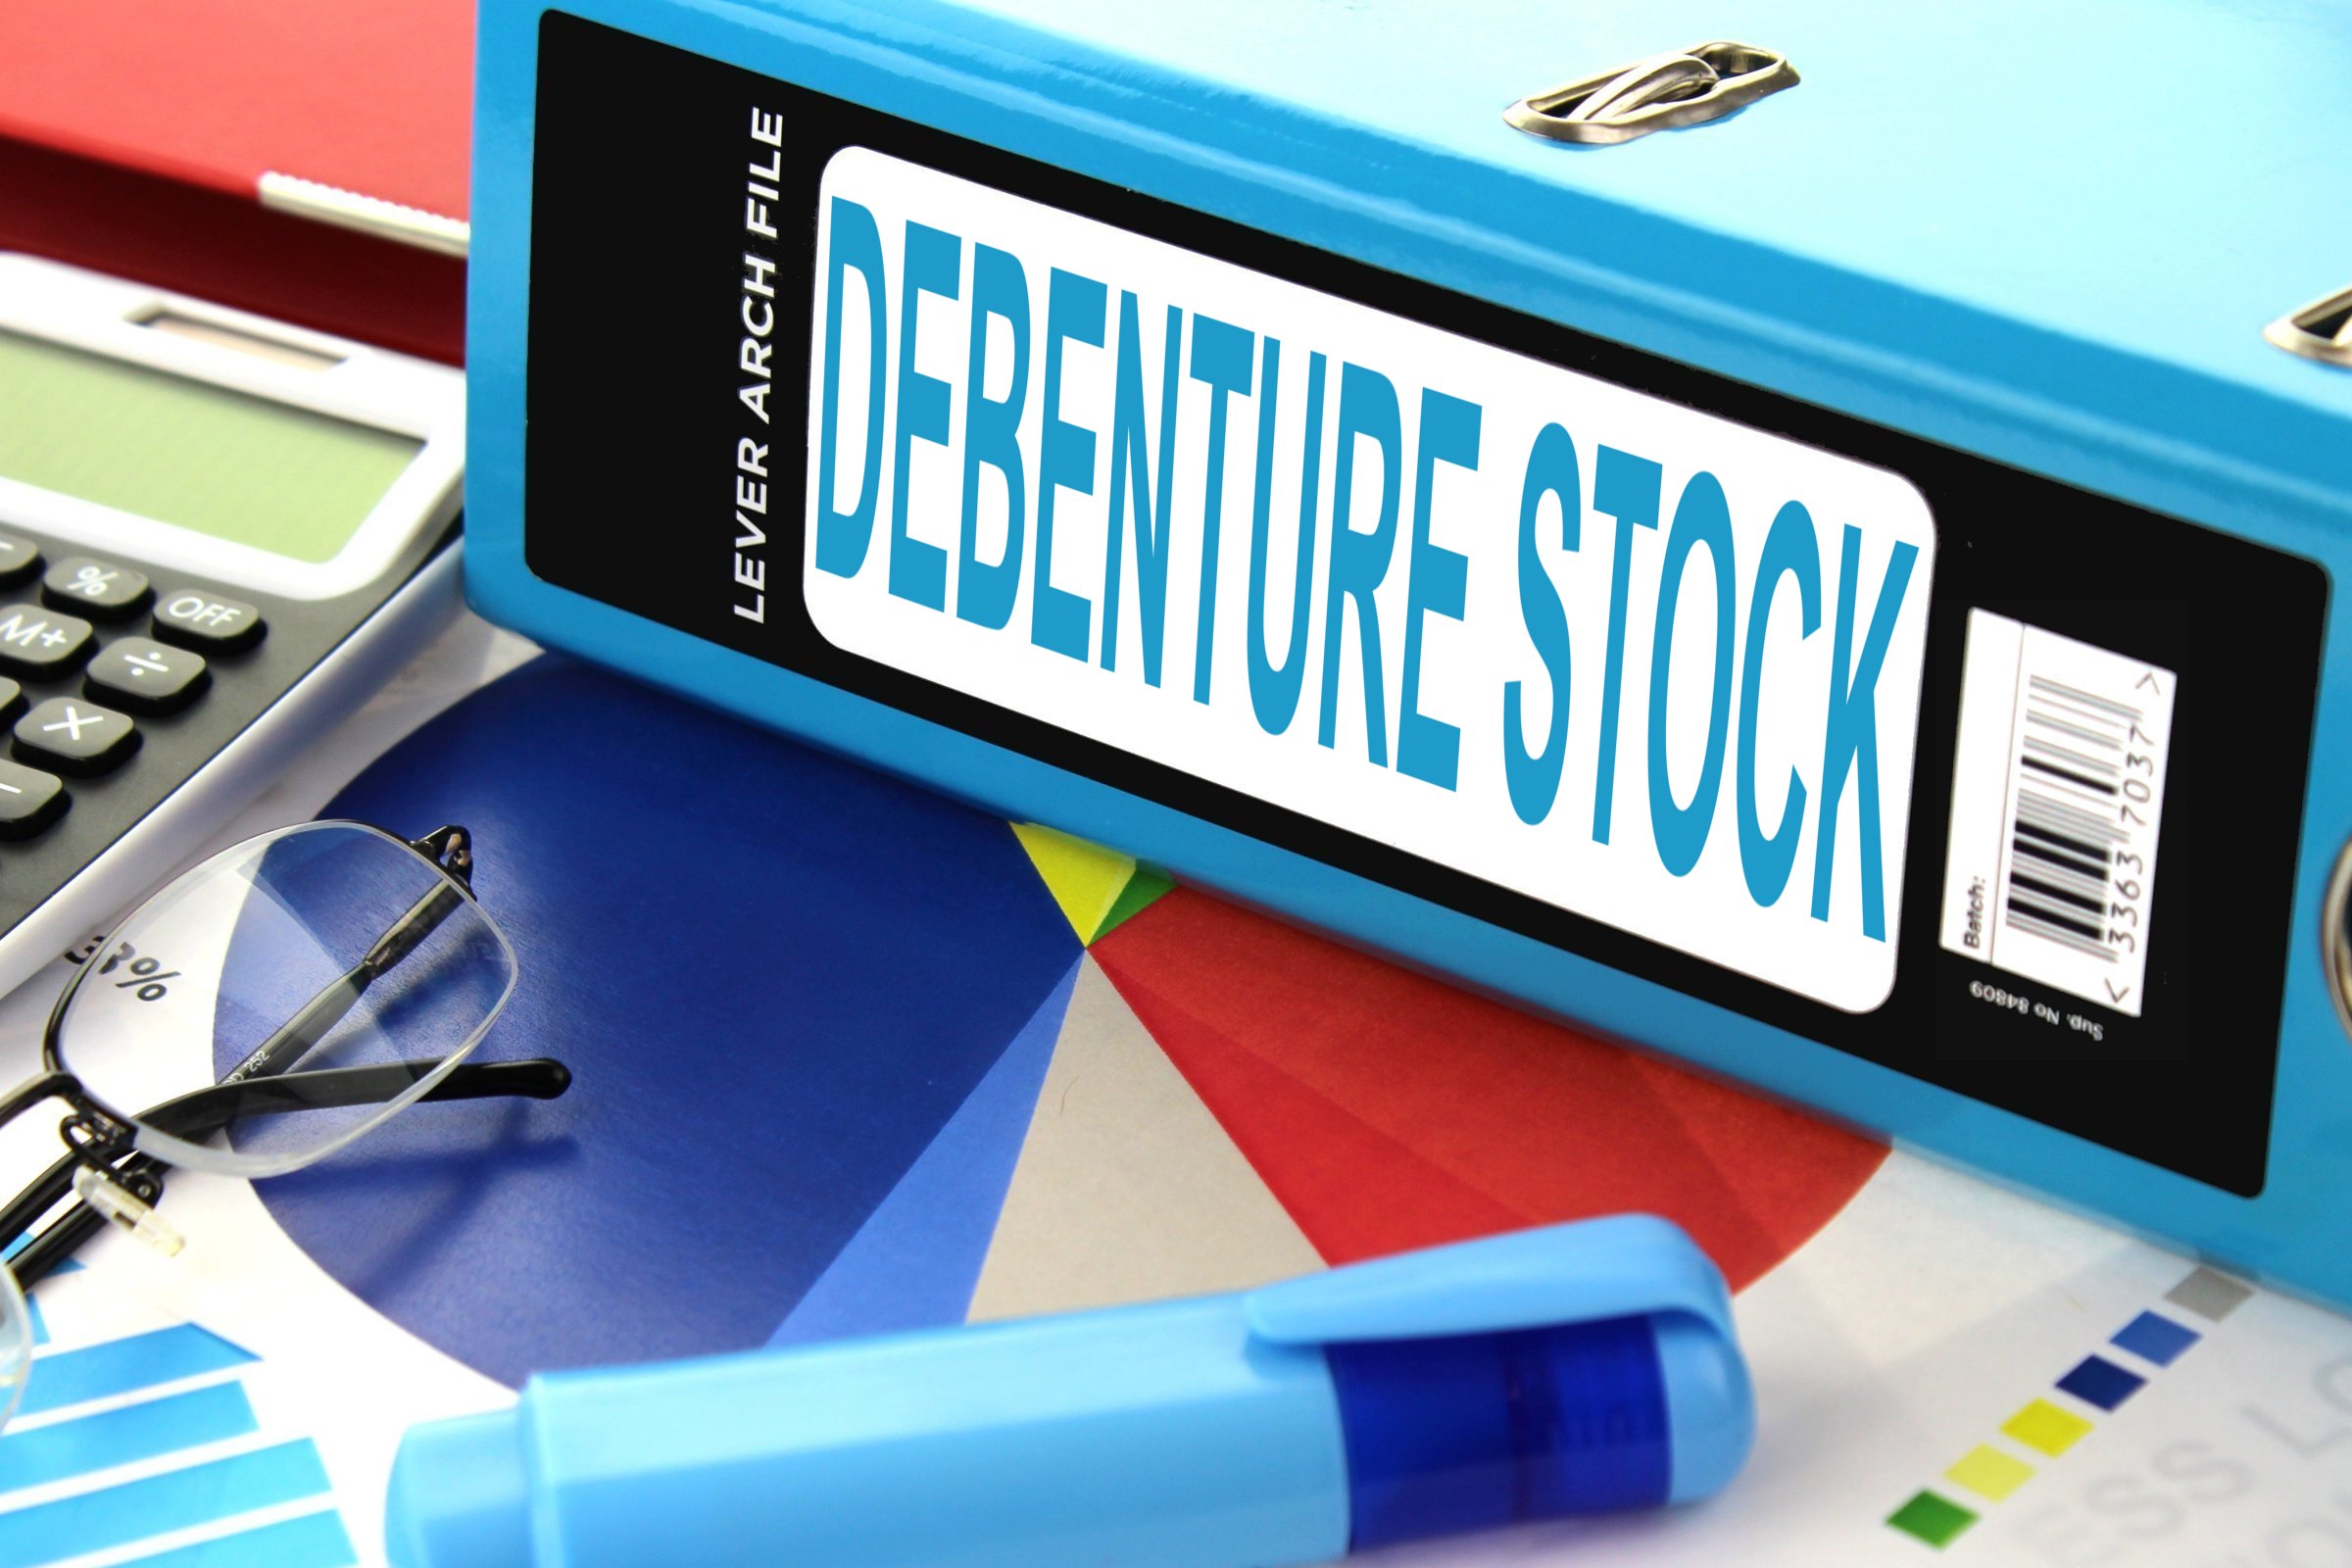 debenture stock